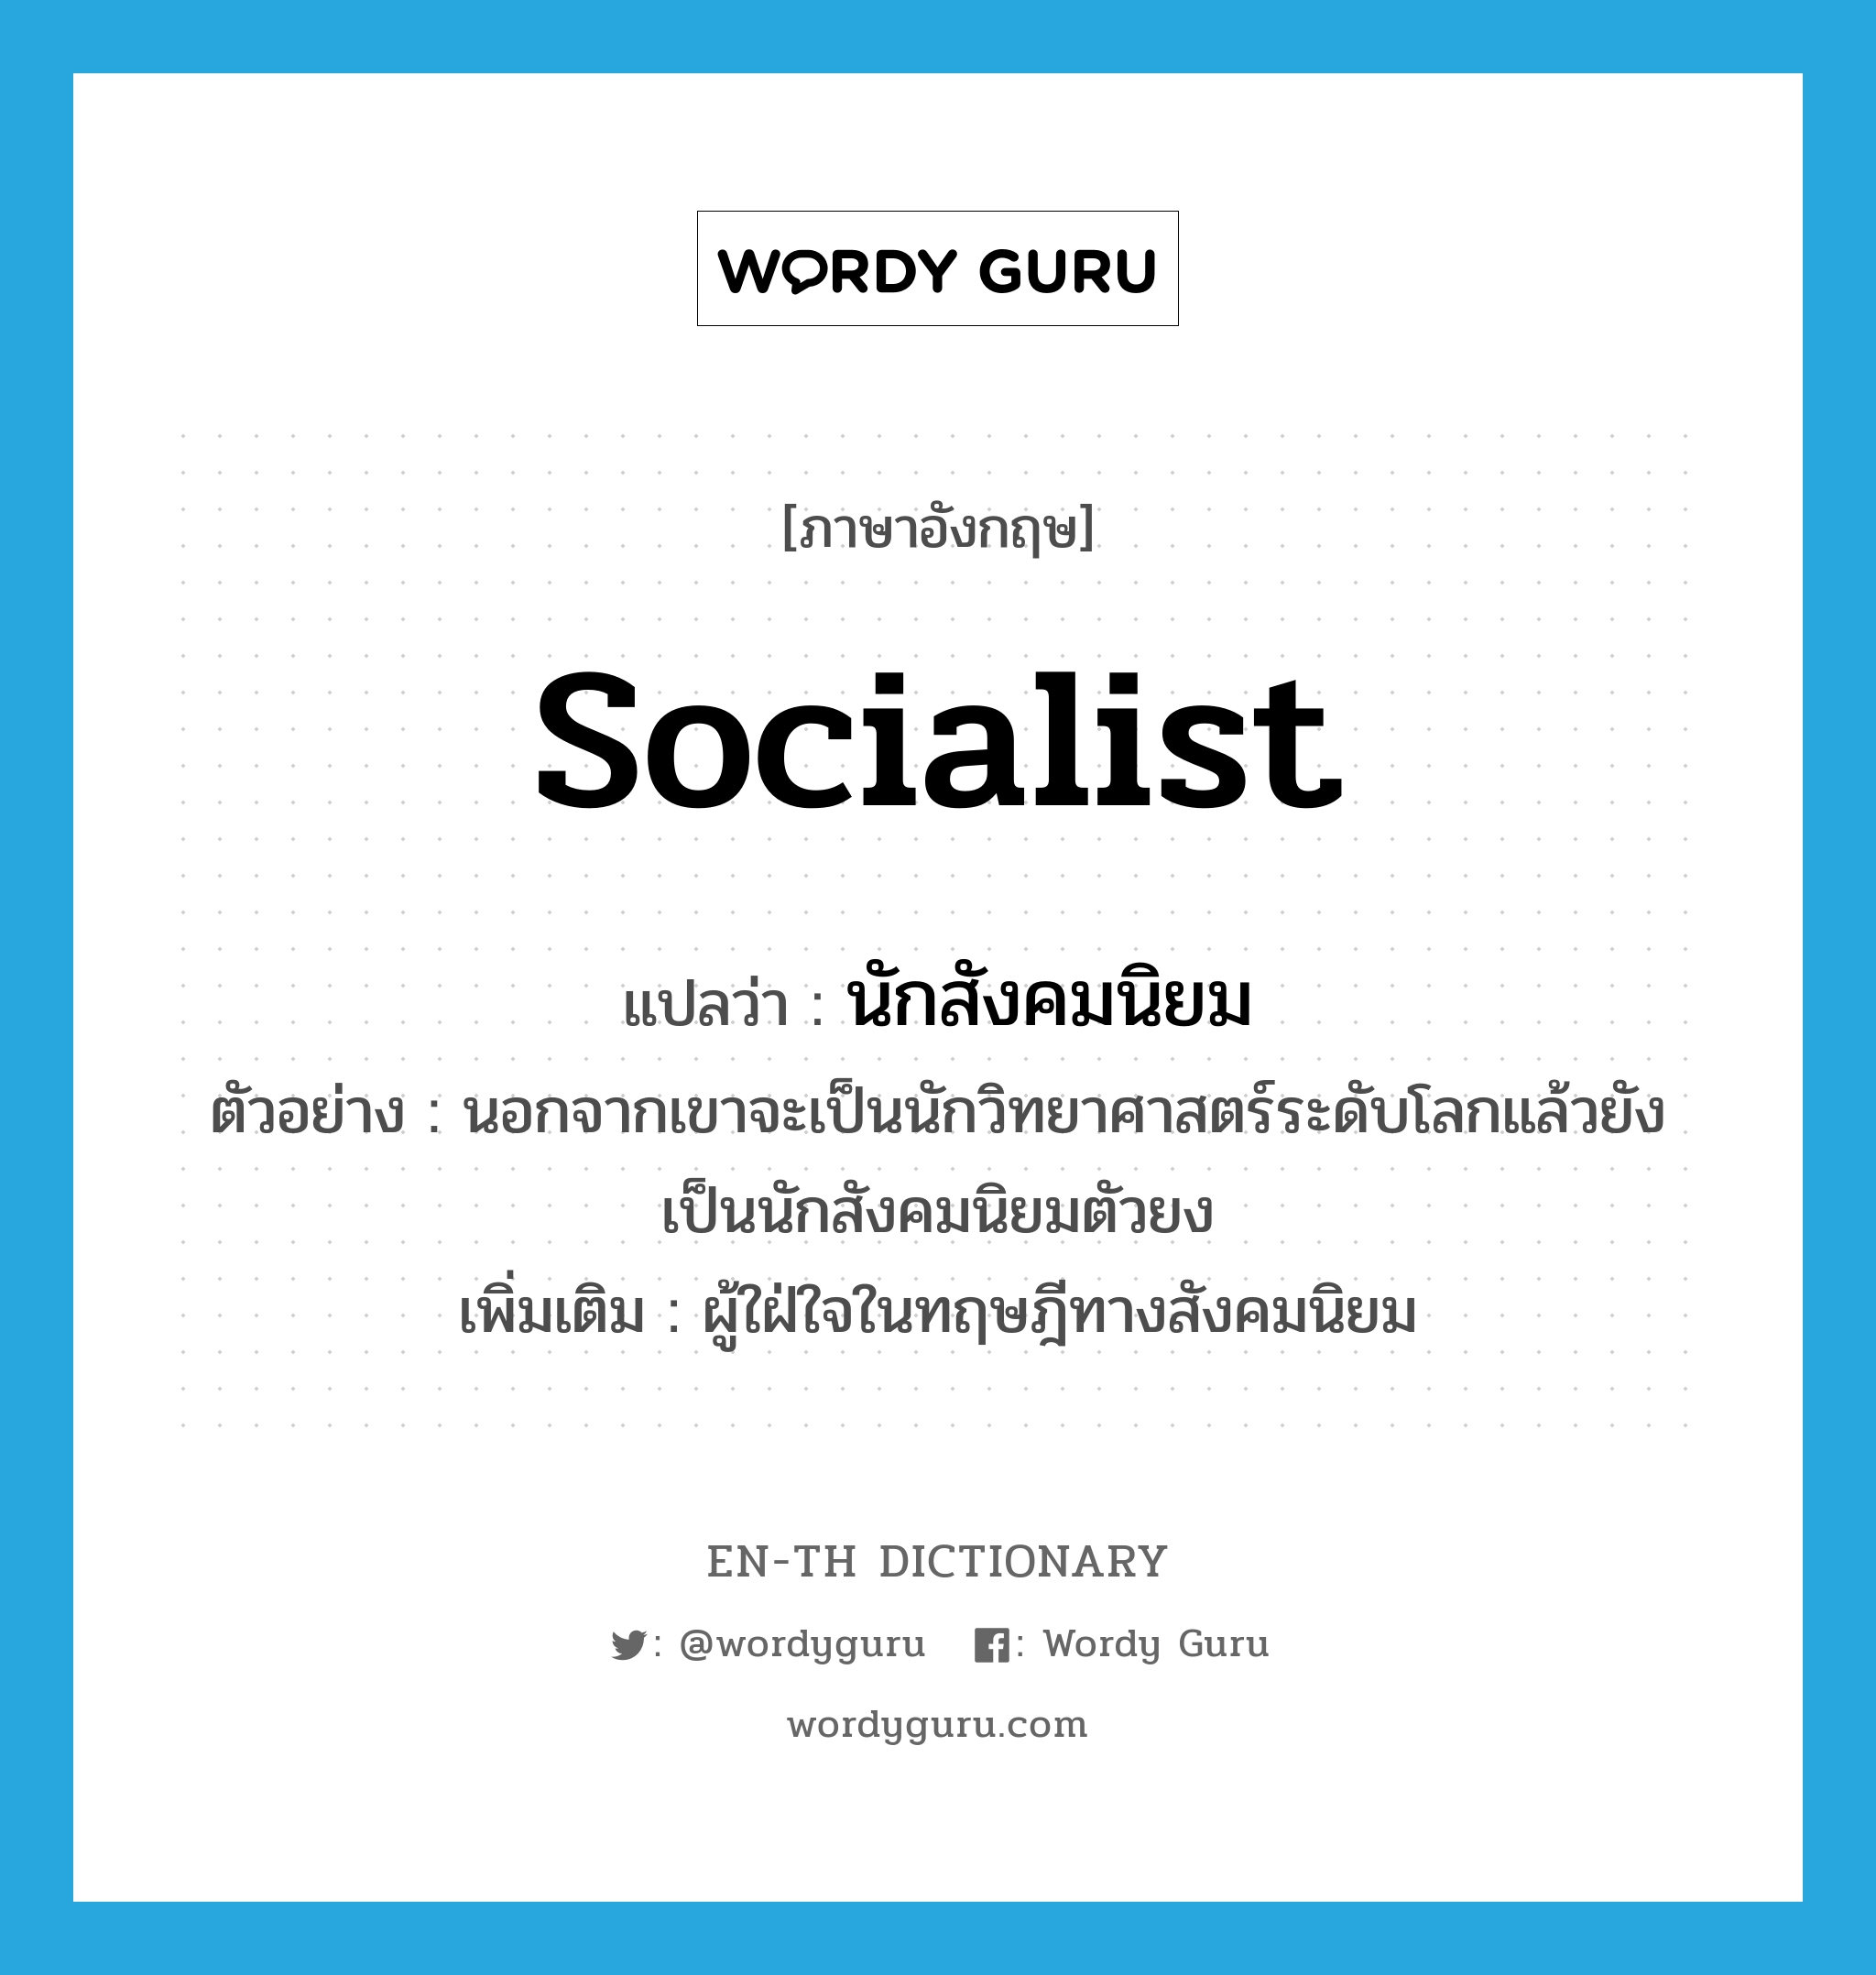 socialist แปลว่า?, คำศัพท์ภาษาอังกฤษ socialist แปลว่า นักสังคมนิยม ประเภท N ตัวอย่าง นอกจากเขาจะเป็นนักวิทยาศาสตร์ระดับโลกแล้วยังเป็นนักสังคมนิยมตัวยง เพิ่มเติม ผู้ใฝ่ใจในทฤษฎีทางสังคมนิยม หมวด N